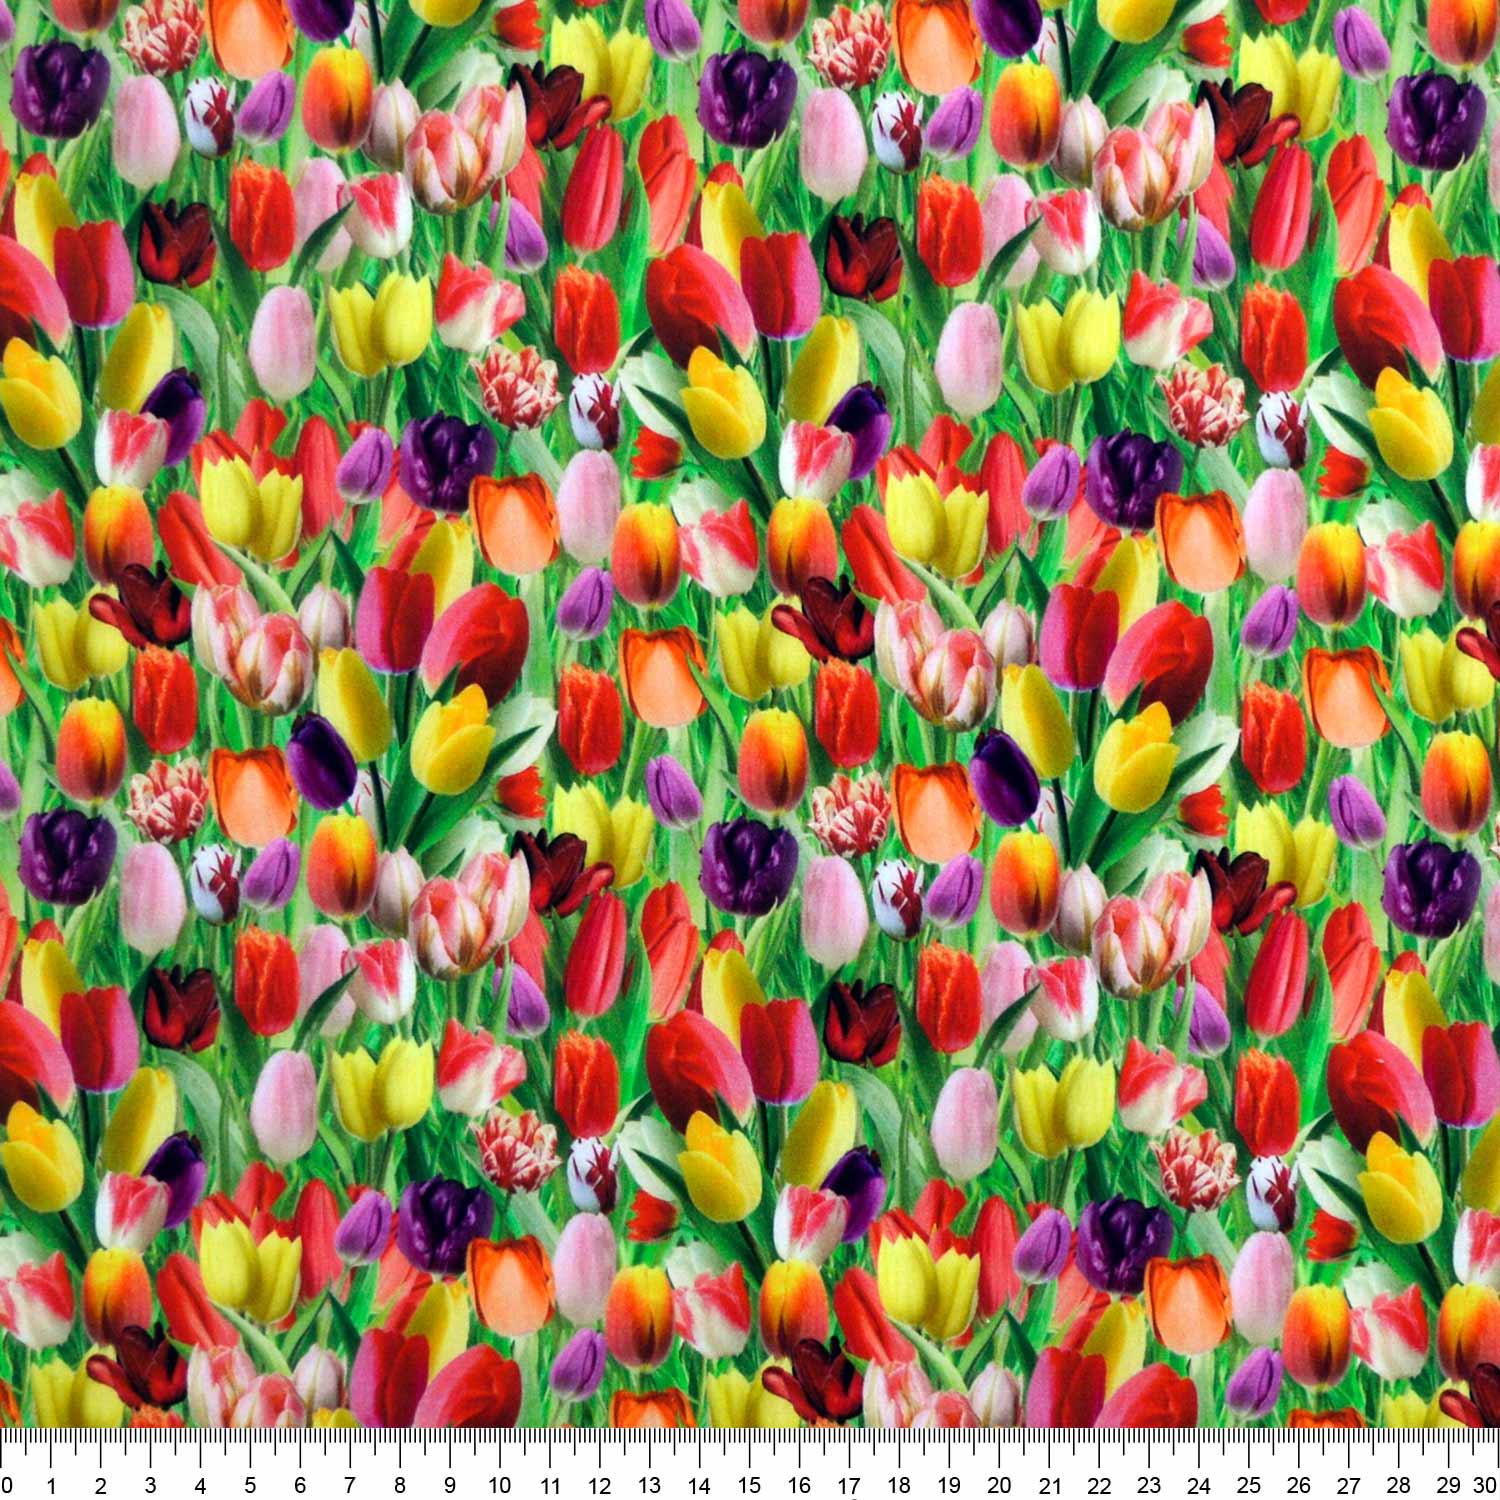 tecido-tricoline-estampado-digital-floral-estella-della-aviamentos-tecidos-caldeira-capa-r-11057